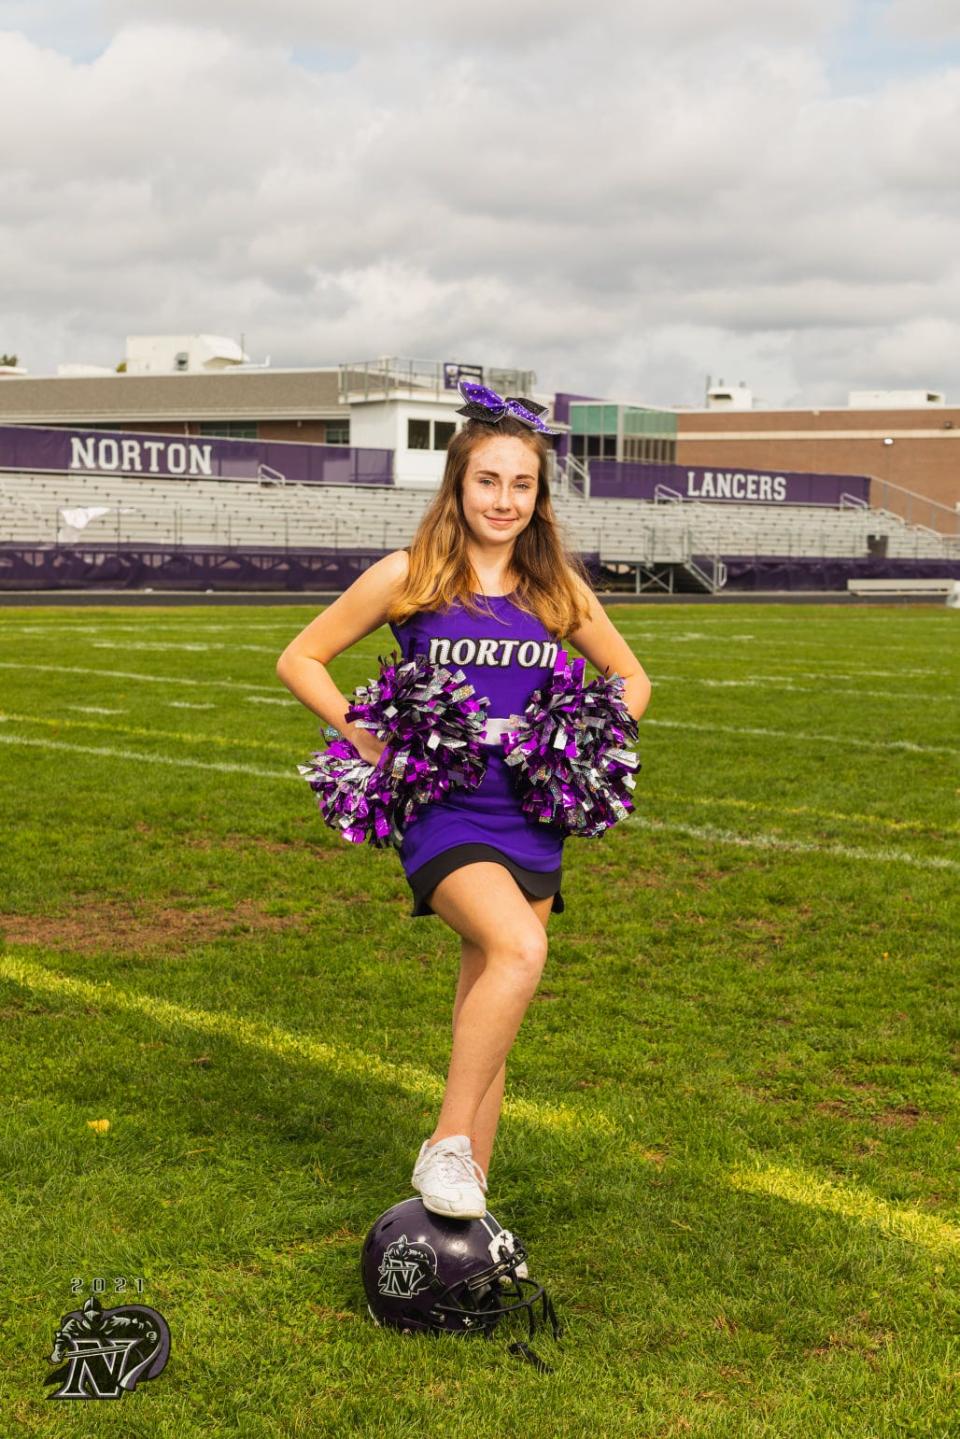 Norton Lady Junior Lancer 14U cheerleader Abby Edgehille was named an Elite All Star.